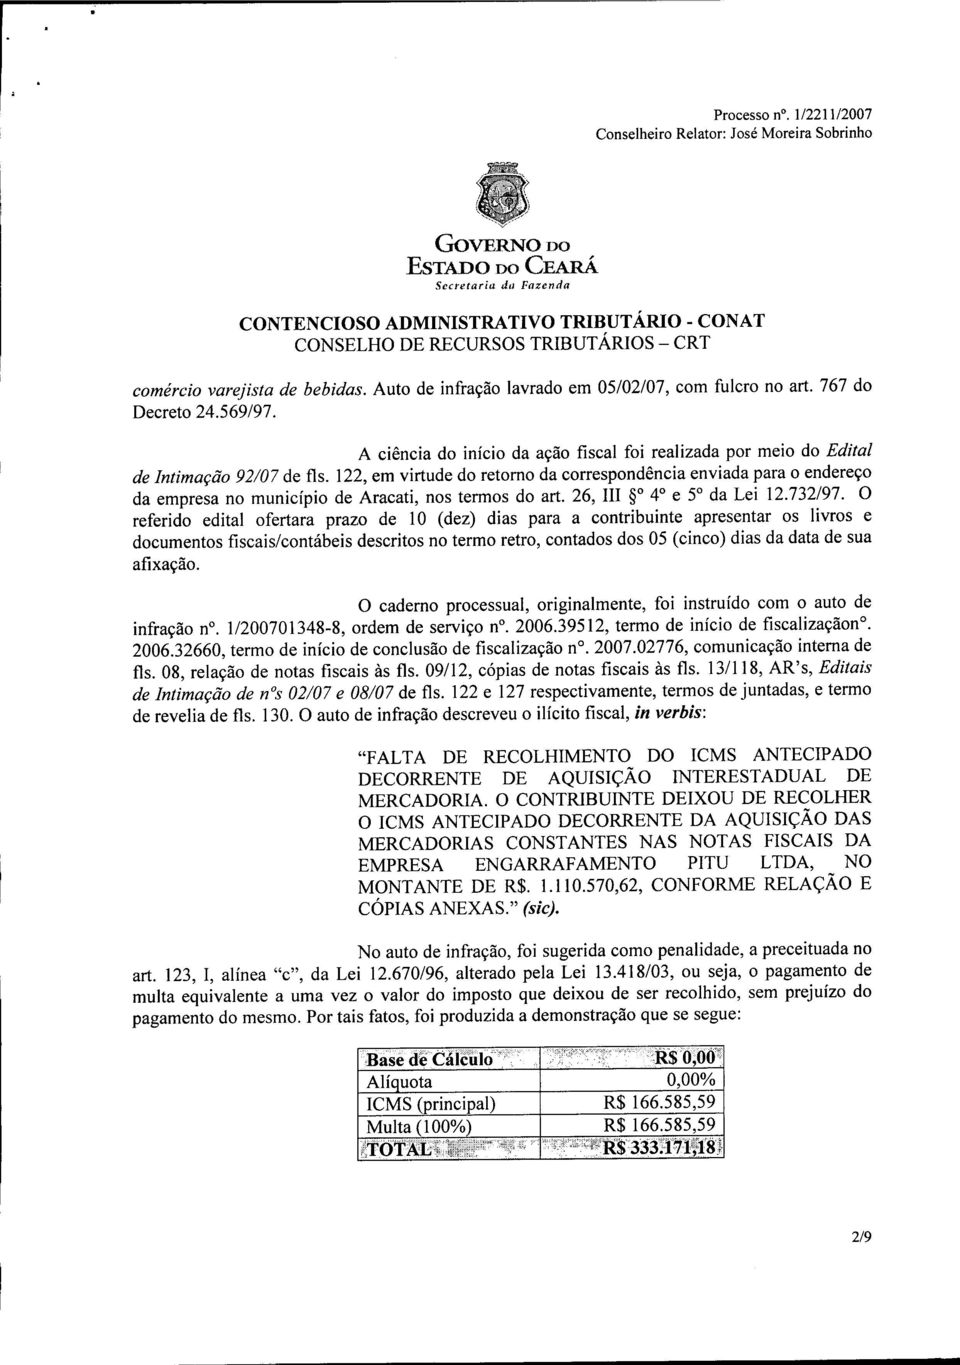 122, em virtude do retomo da correspondência enviada para o endereço da empresa no município de Aracati, nos termos do art. 26, In SO 4 e 5 da Lei 12.732/97.